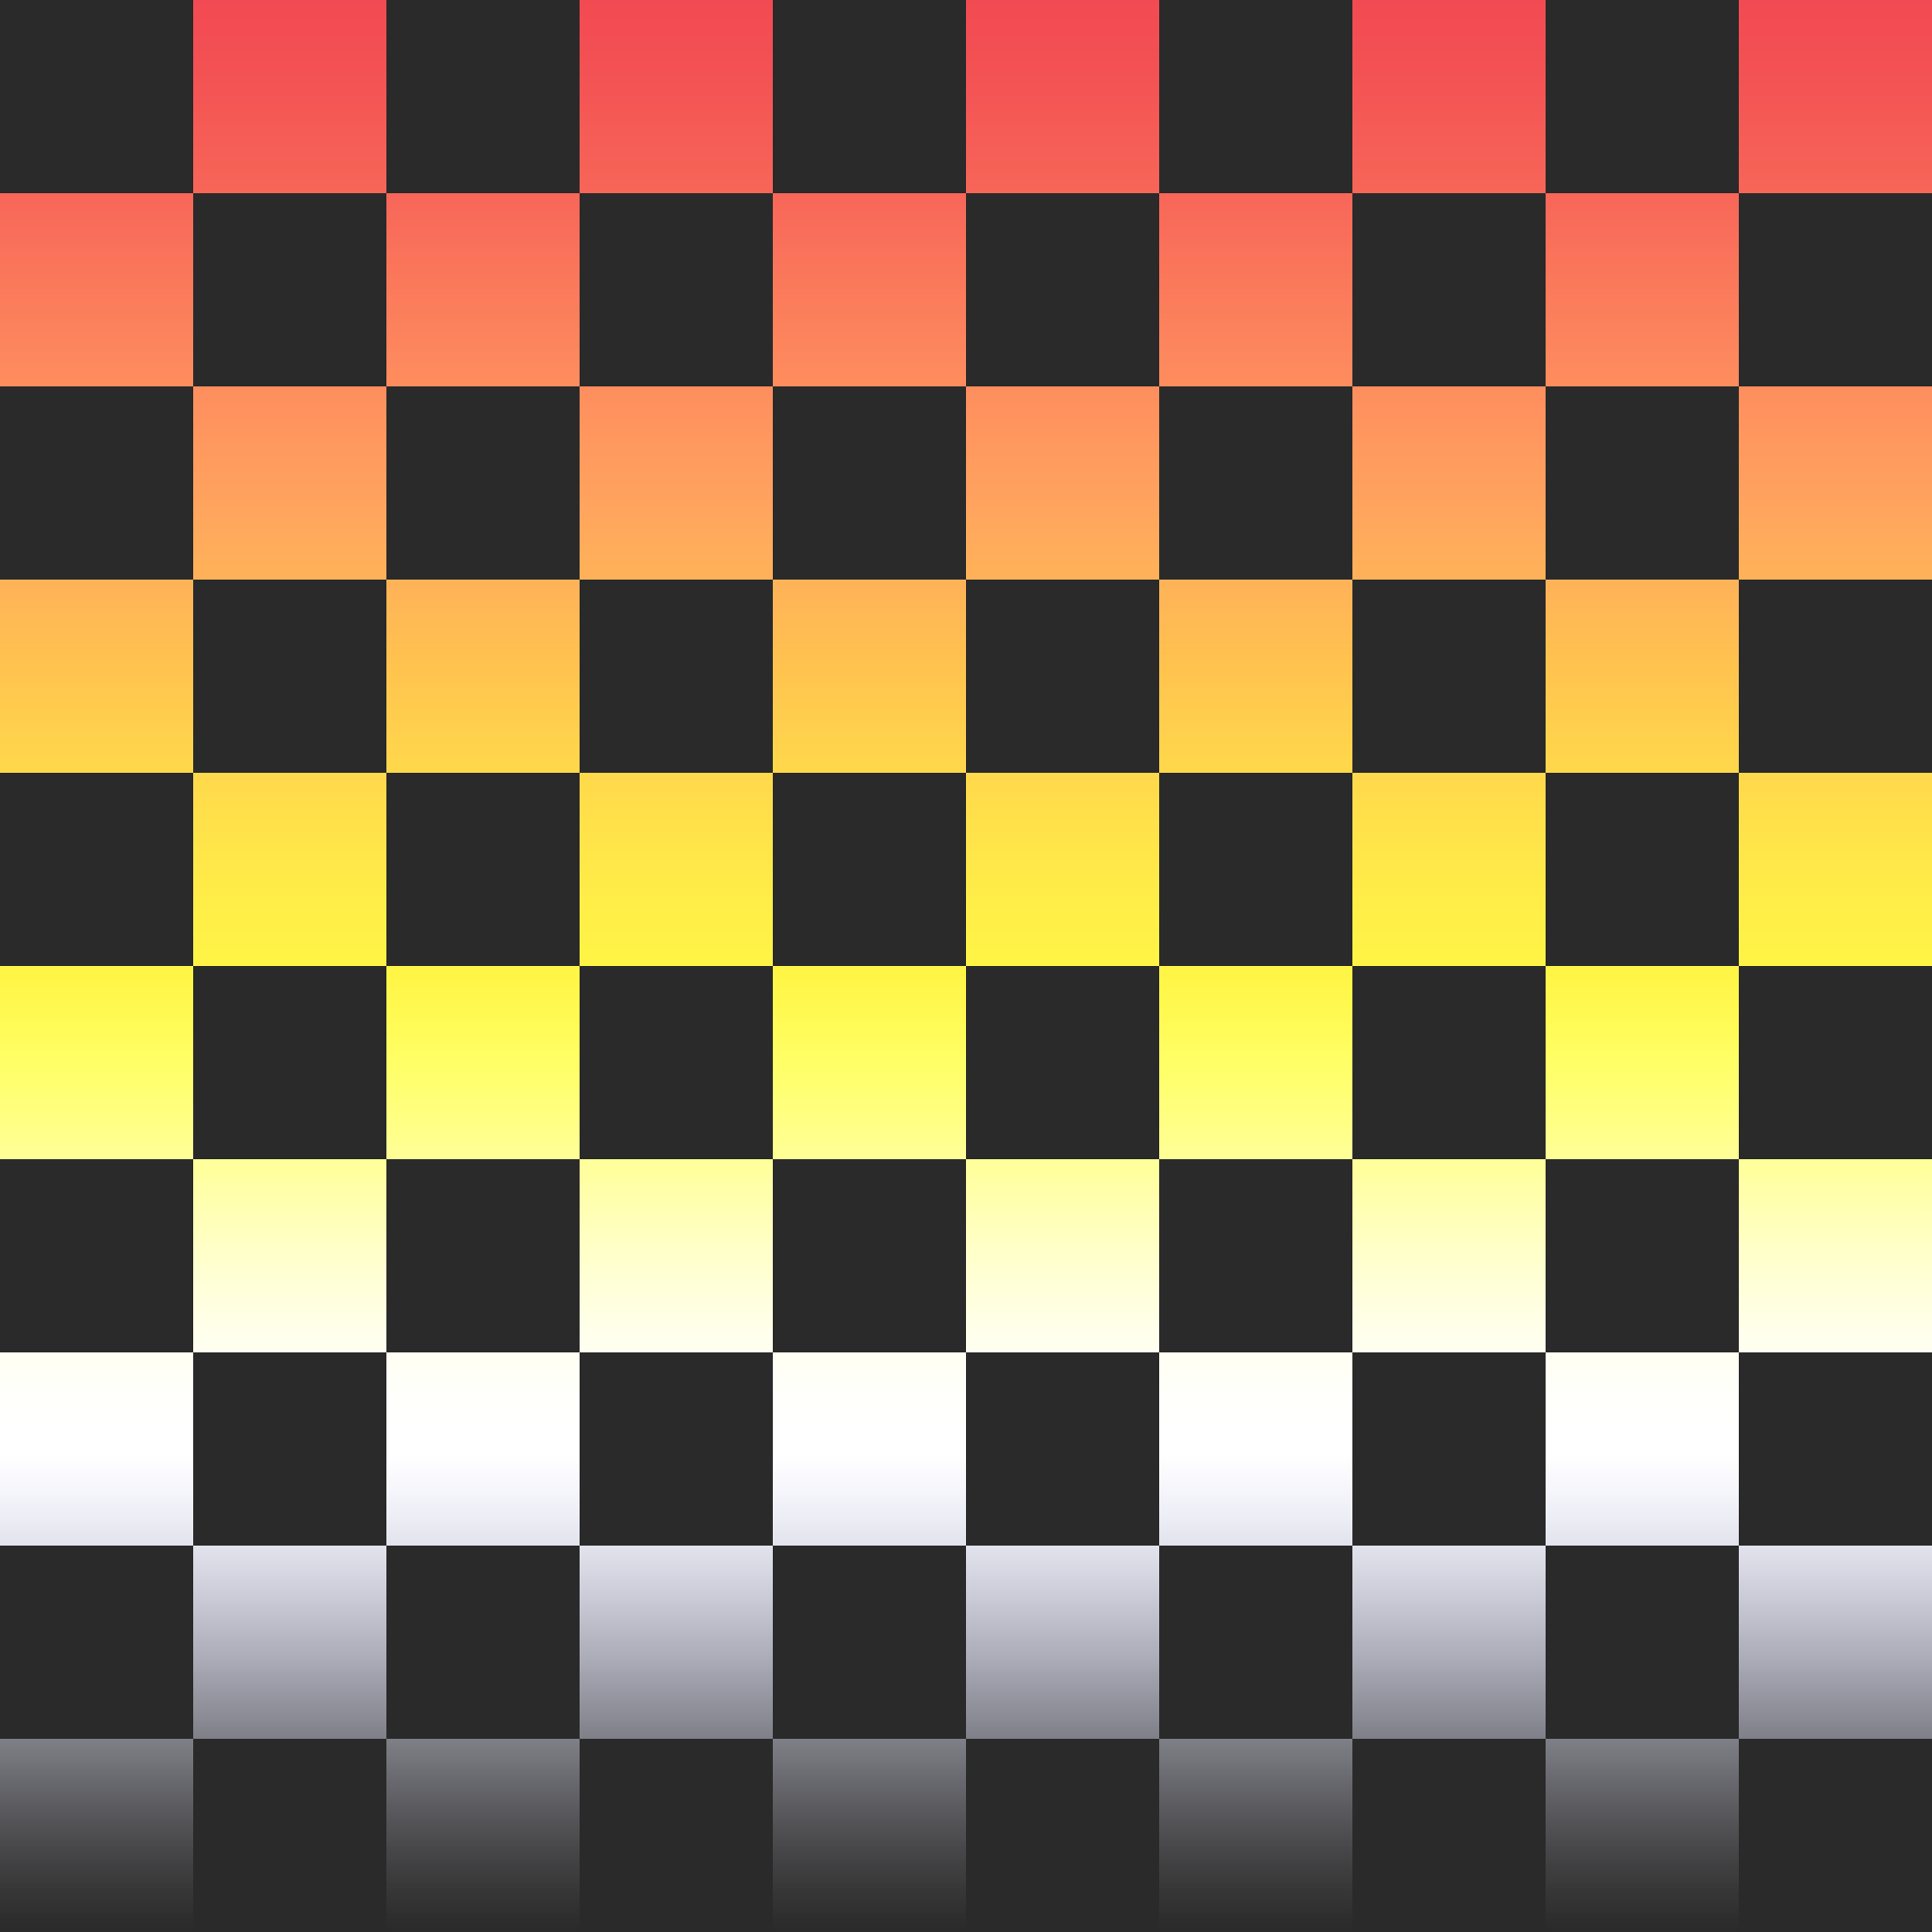 Padrão quadriculado alternado entre quadrados cinza escuros e um degradê horizontal cujas cores centrais são vermelha, laranja, amarela, branca e cinza escura.